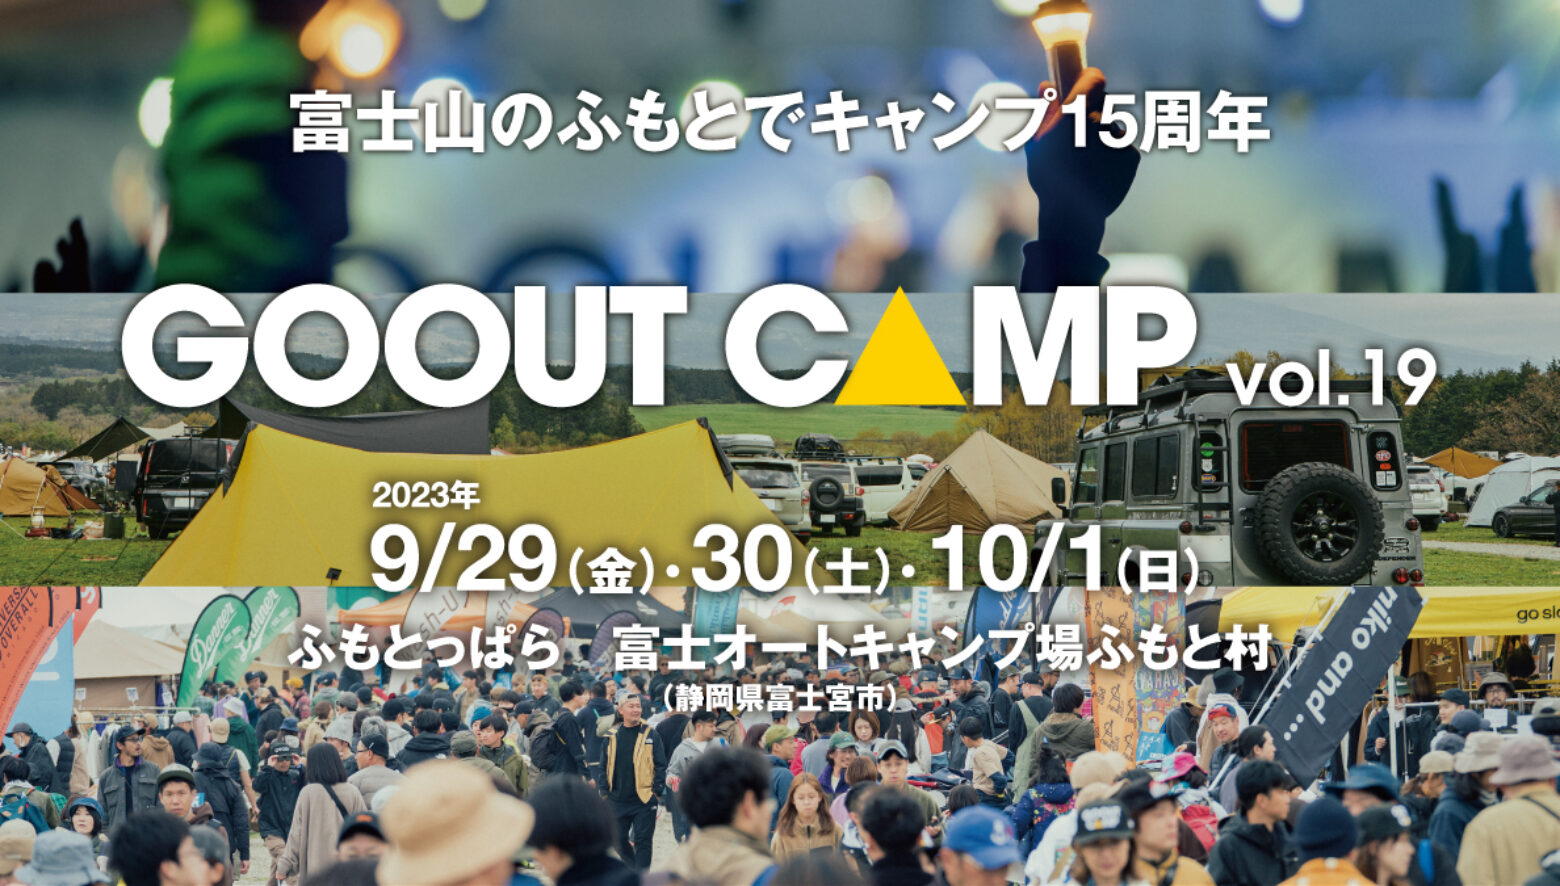 富士山のふもとで15周年!! 「GO OUT CAMP vol.19」が、9月